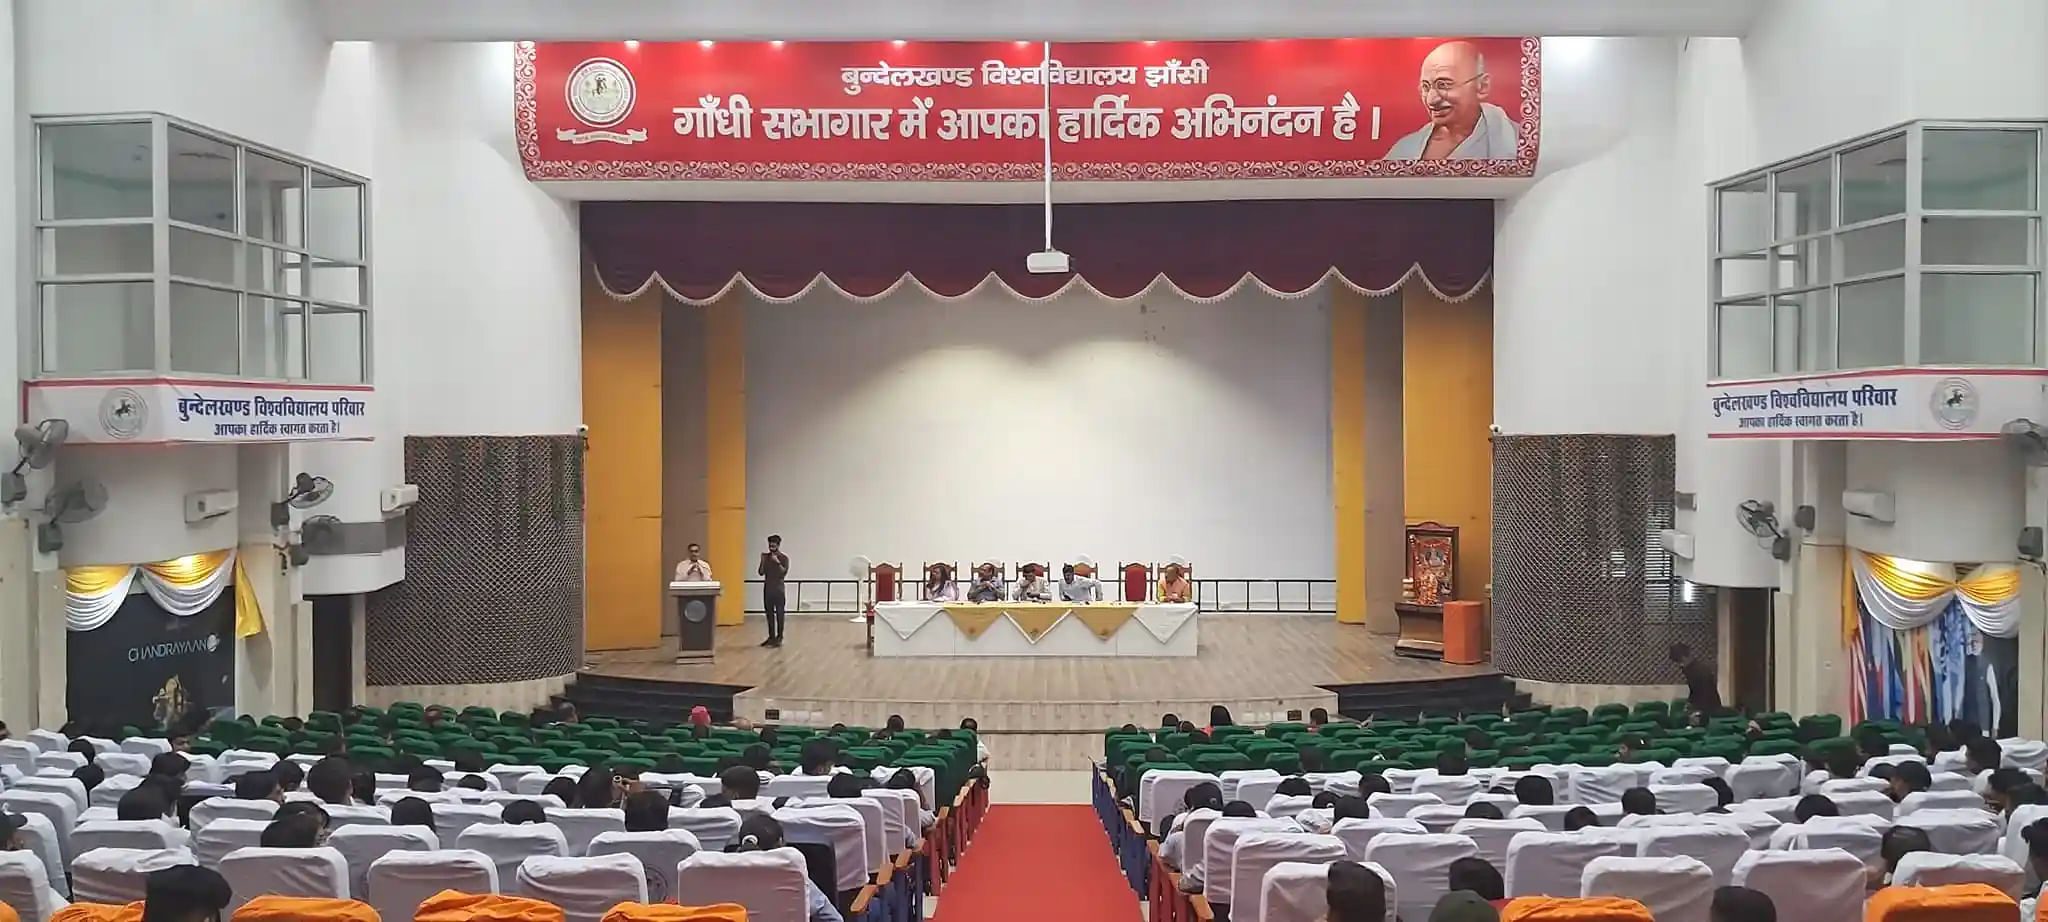 BU Jhansi Auditorium